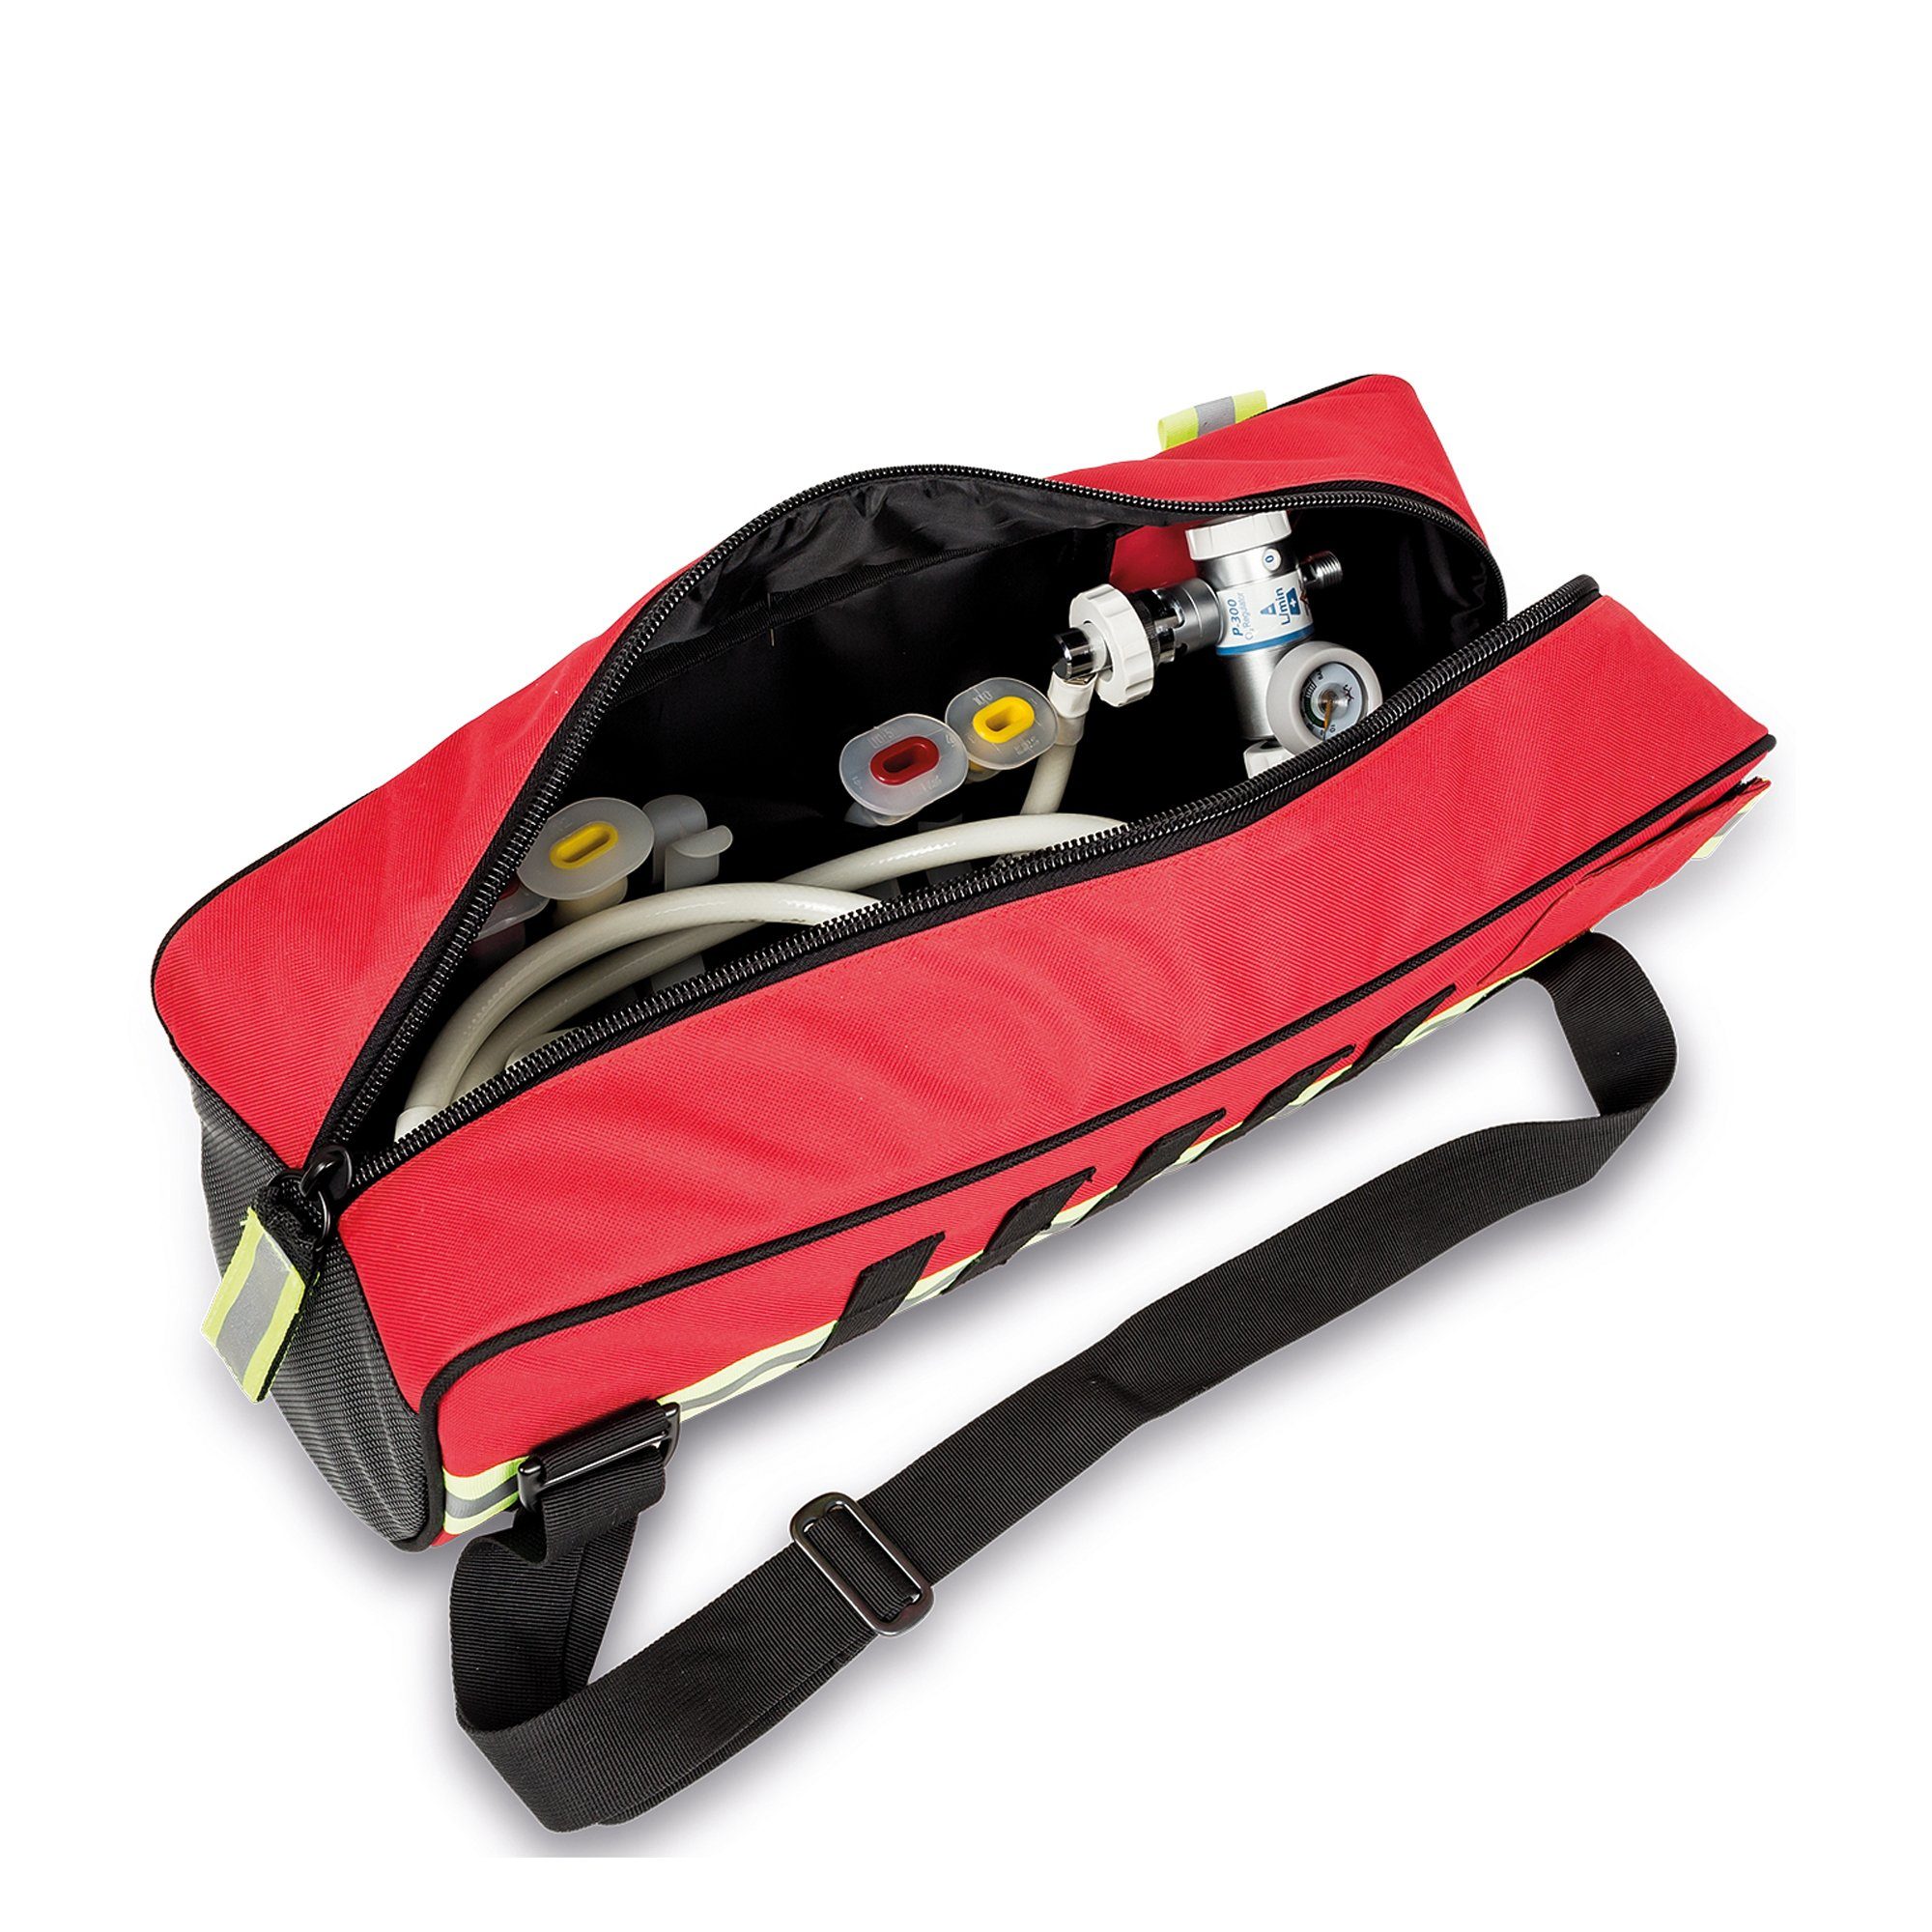 Elite Bags Arzttasche Elite Bags Sauerstoff-Tasche 20 OXY 46 Rot x MID x15 Ø cm